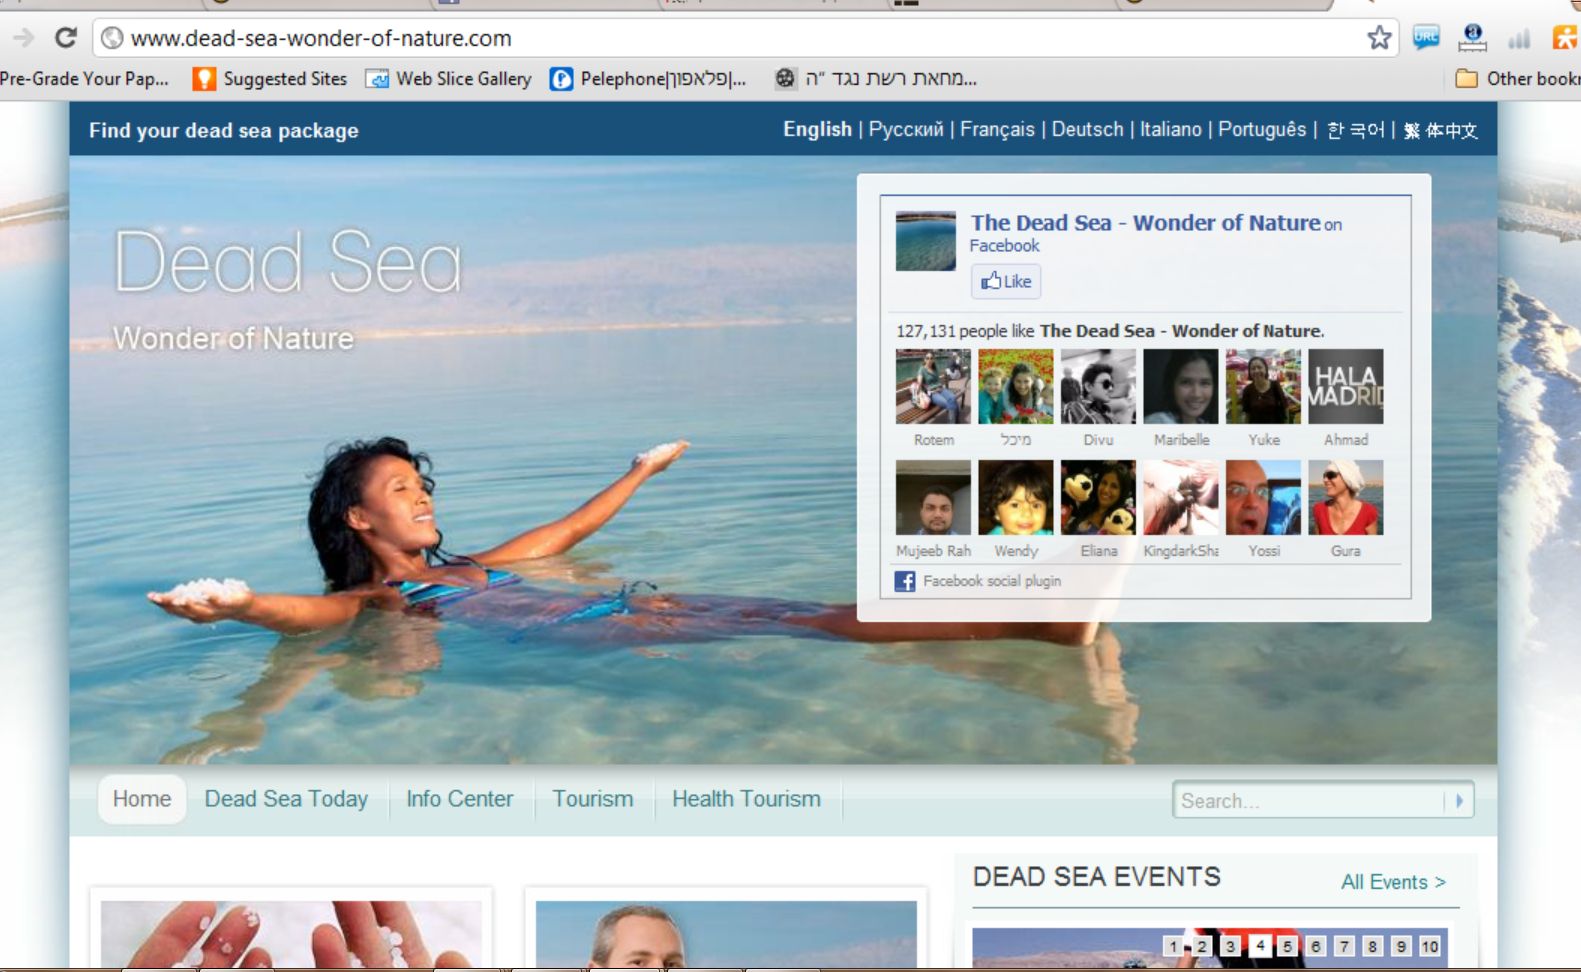 צילום מתוך אתר האינטרנט החדש לקידום ים המלח